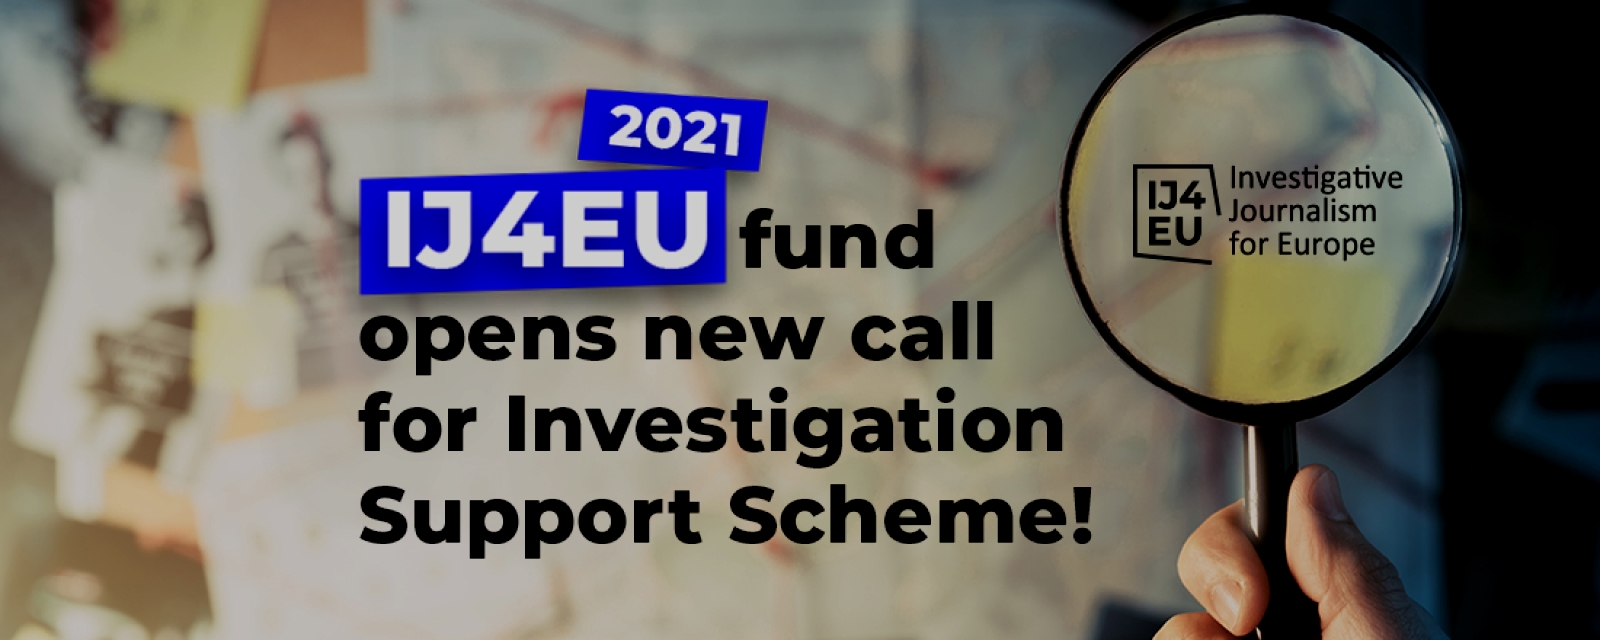 ij4eu-investigation-support-scheme